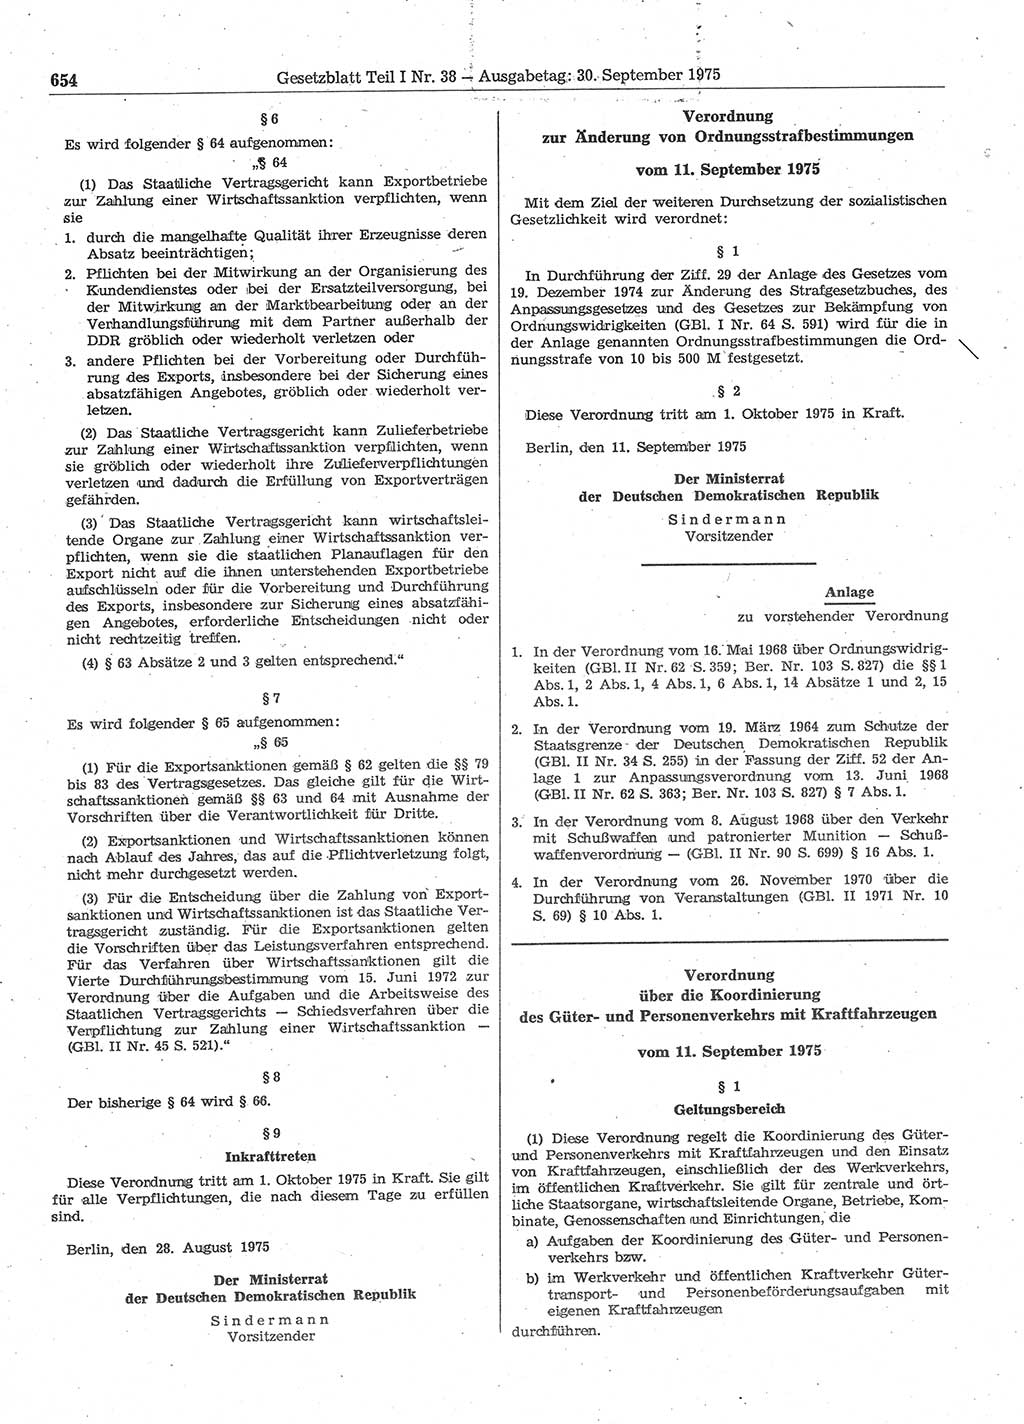 Gesetzblatt (GBl.) der Deutschen Demokratischen Republik (DDR) Teil Ⅰ 1975, Seite 654 (GBl. DDR Ⅰ 1975, S. 654)